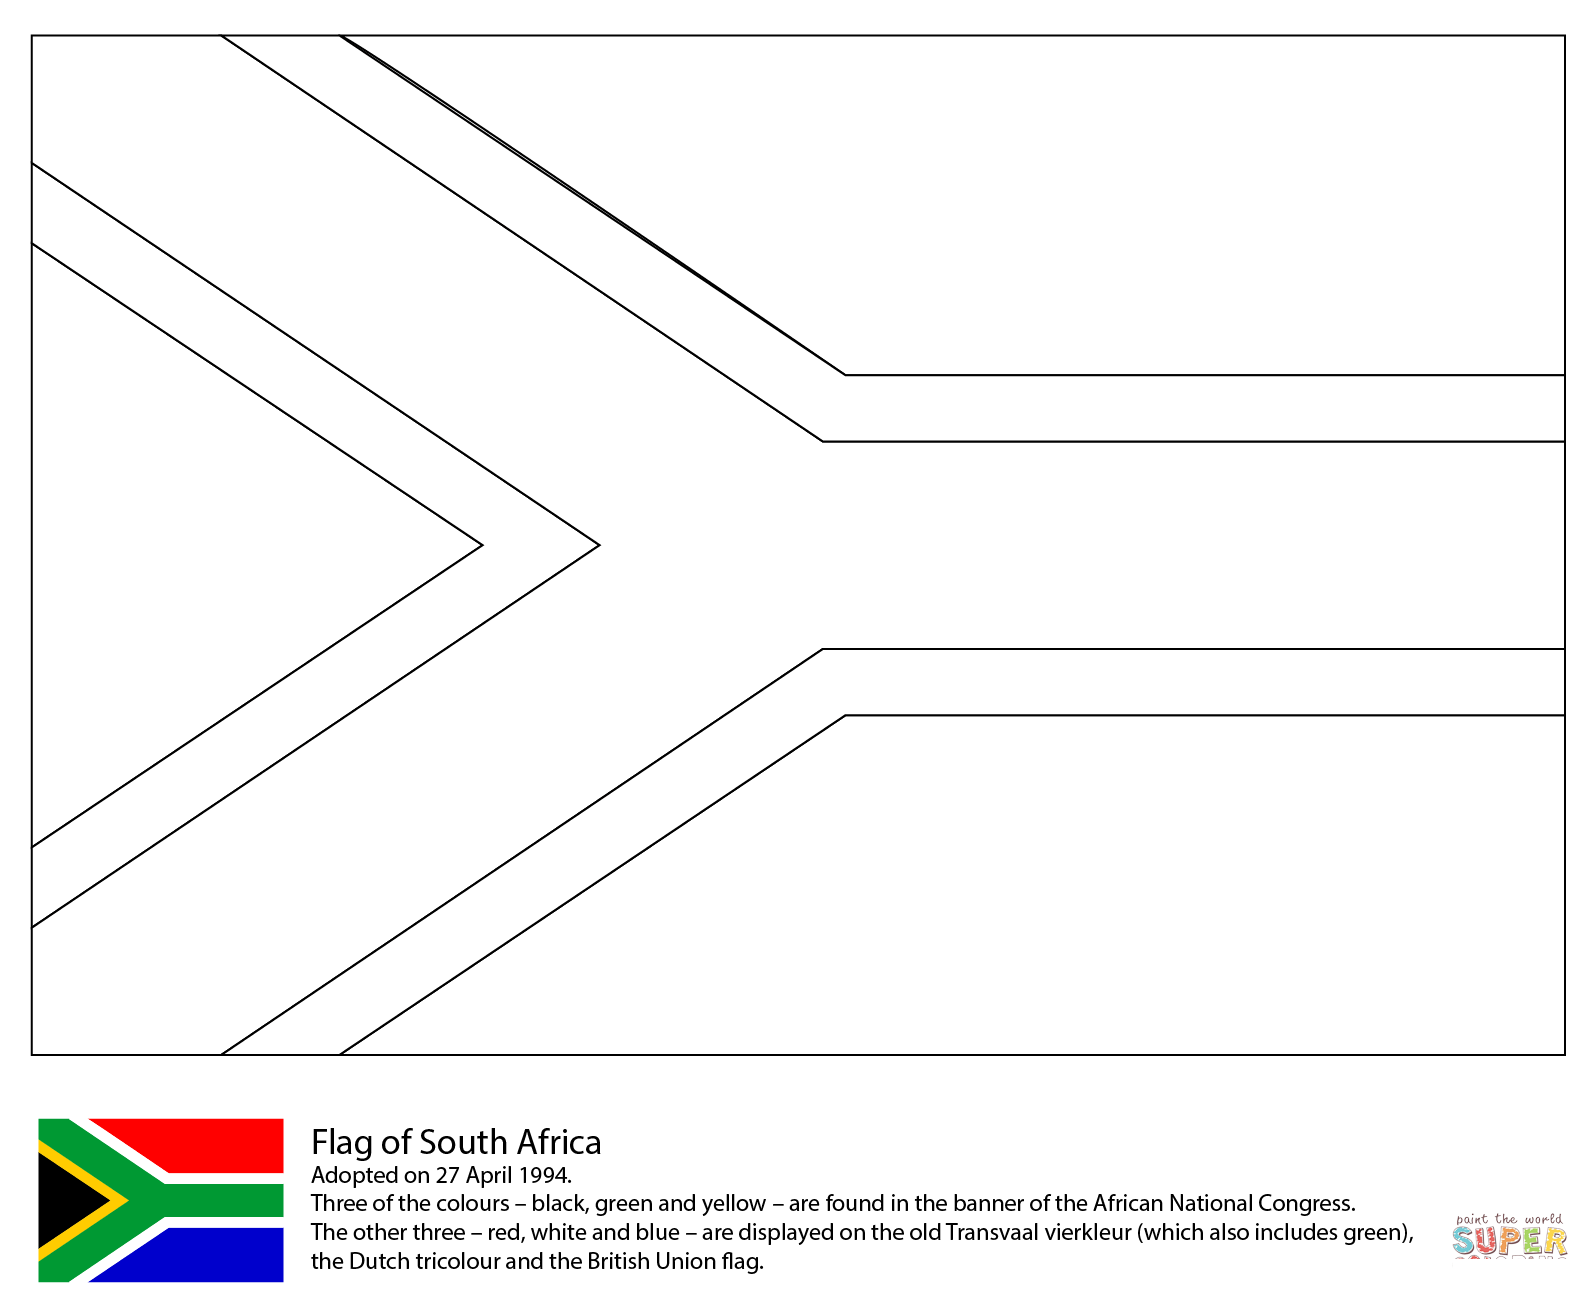 दक्षिण अफ्रीका का झंडा